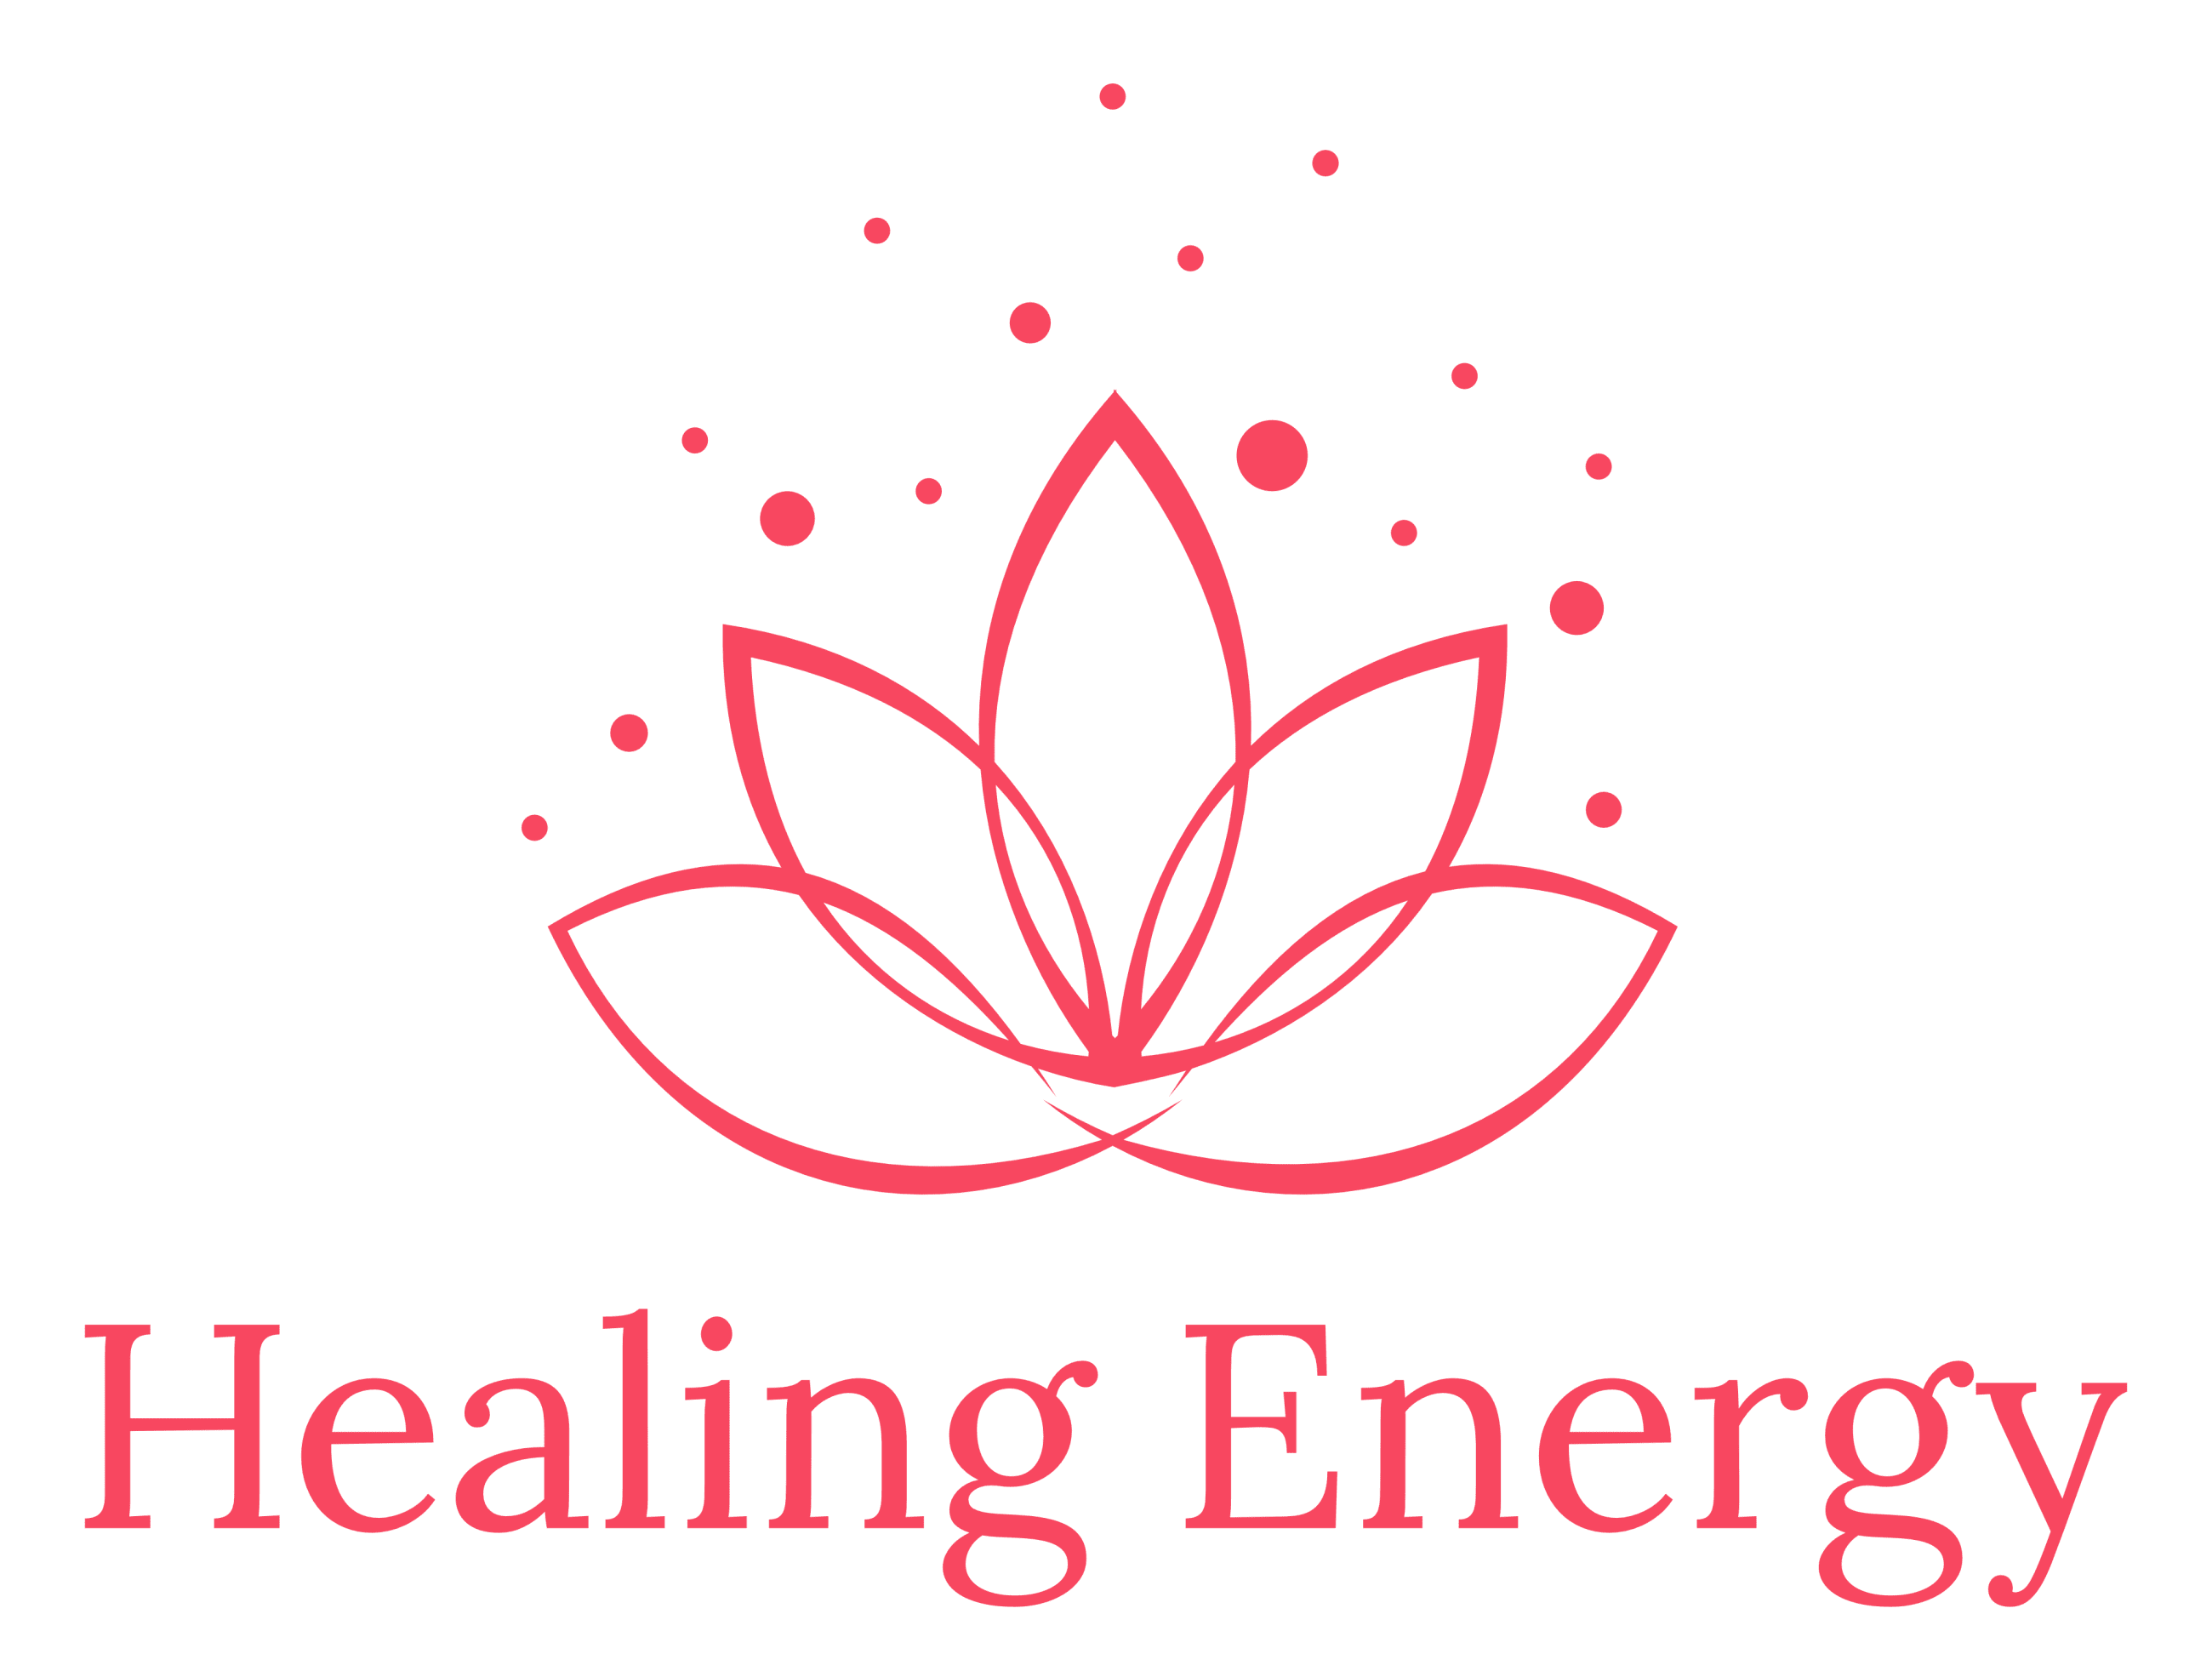 Healing Energy